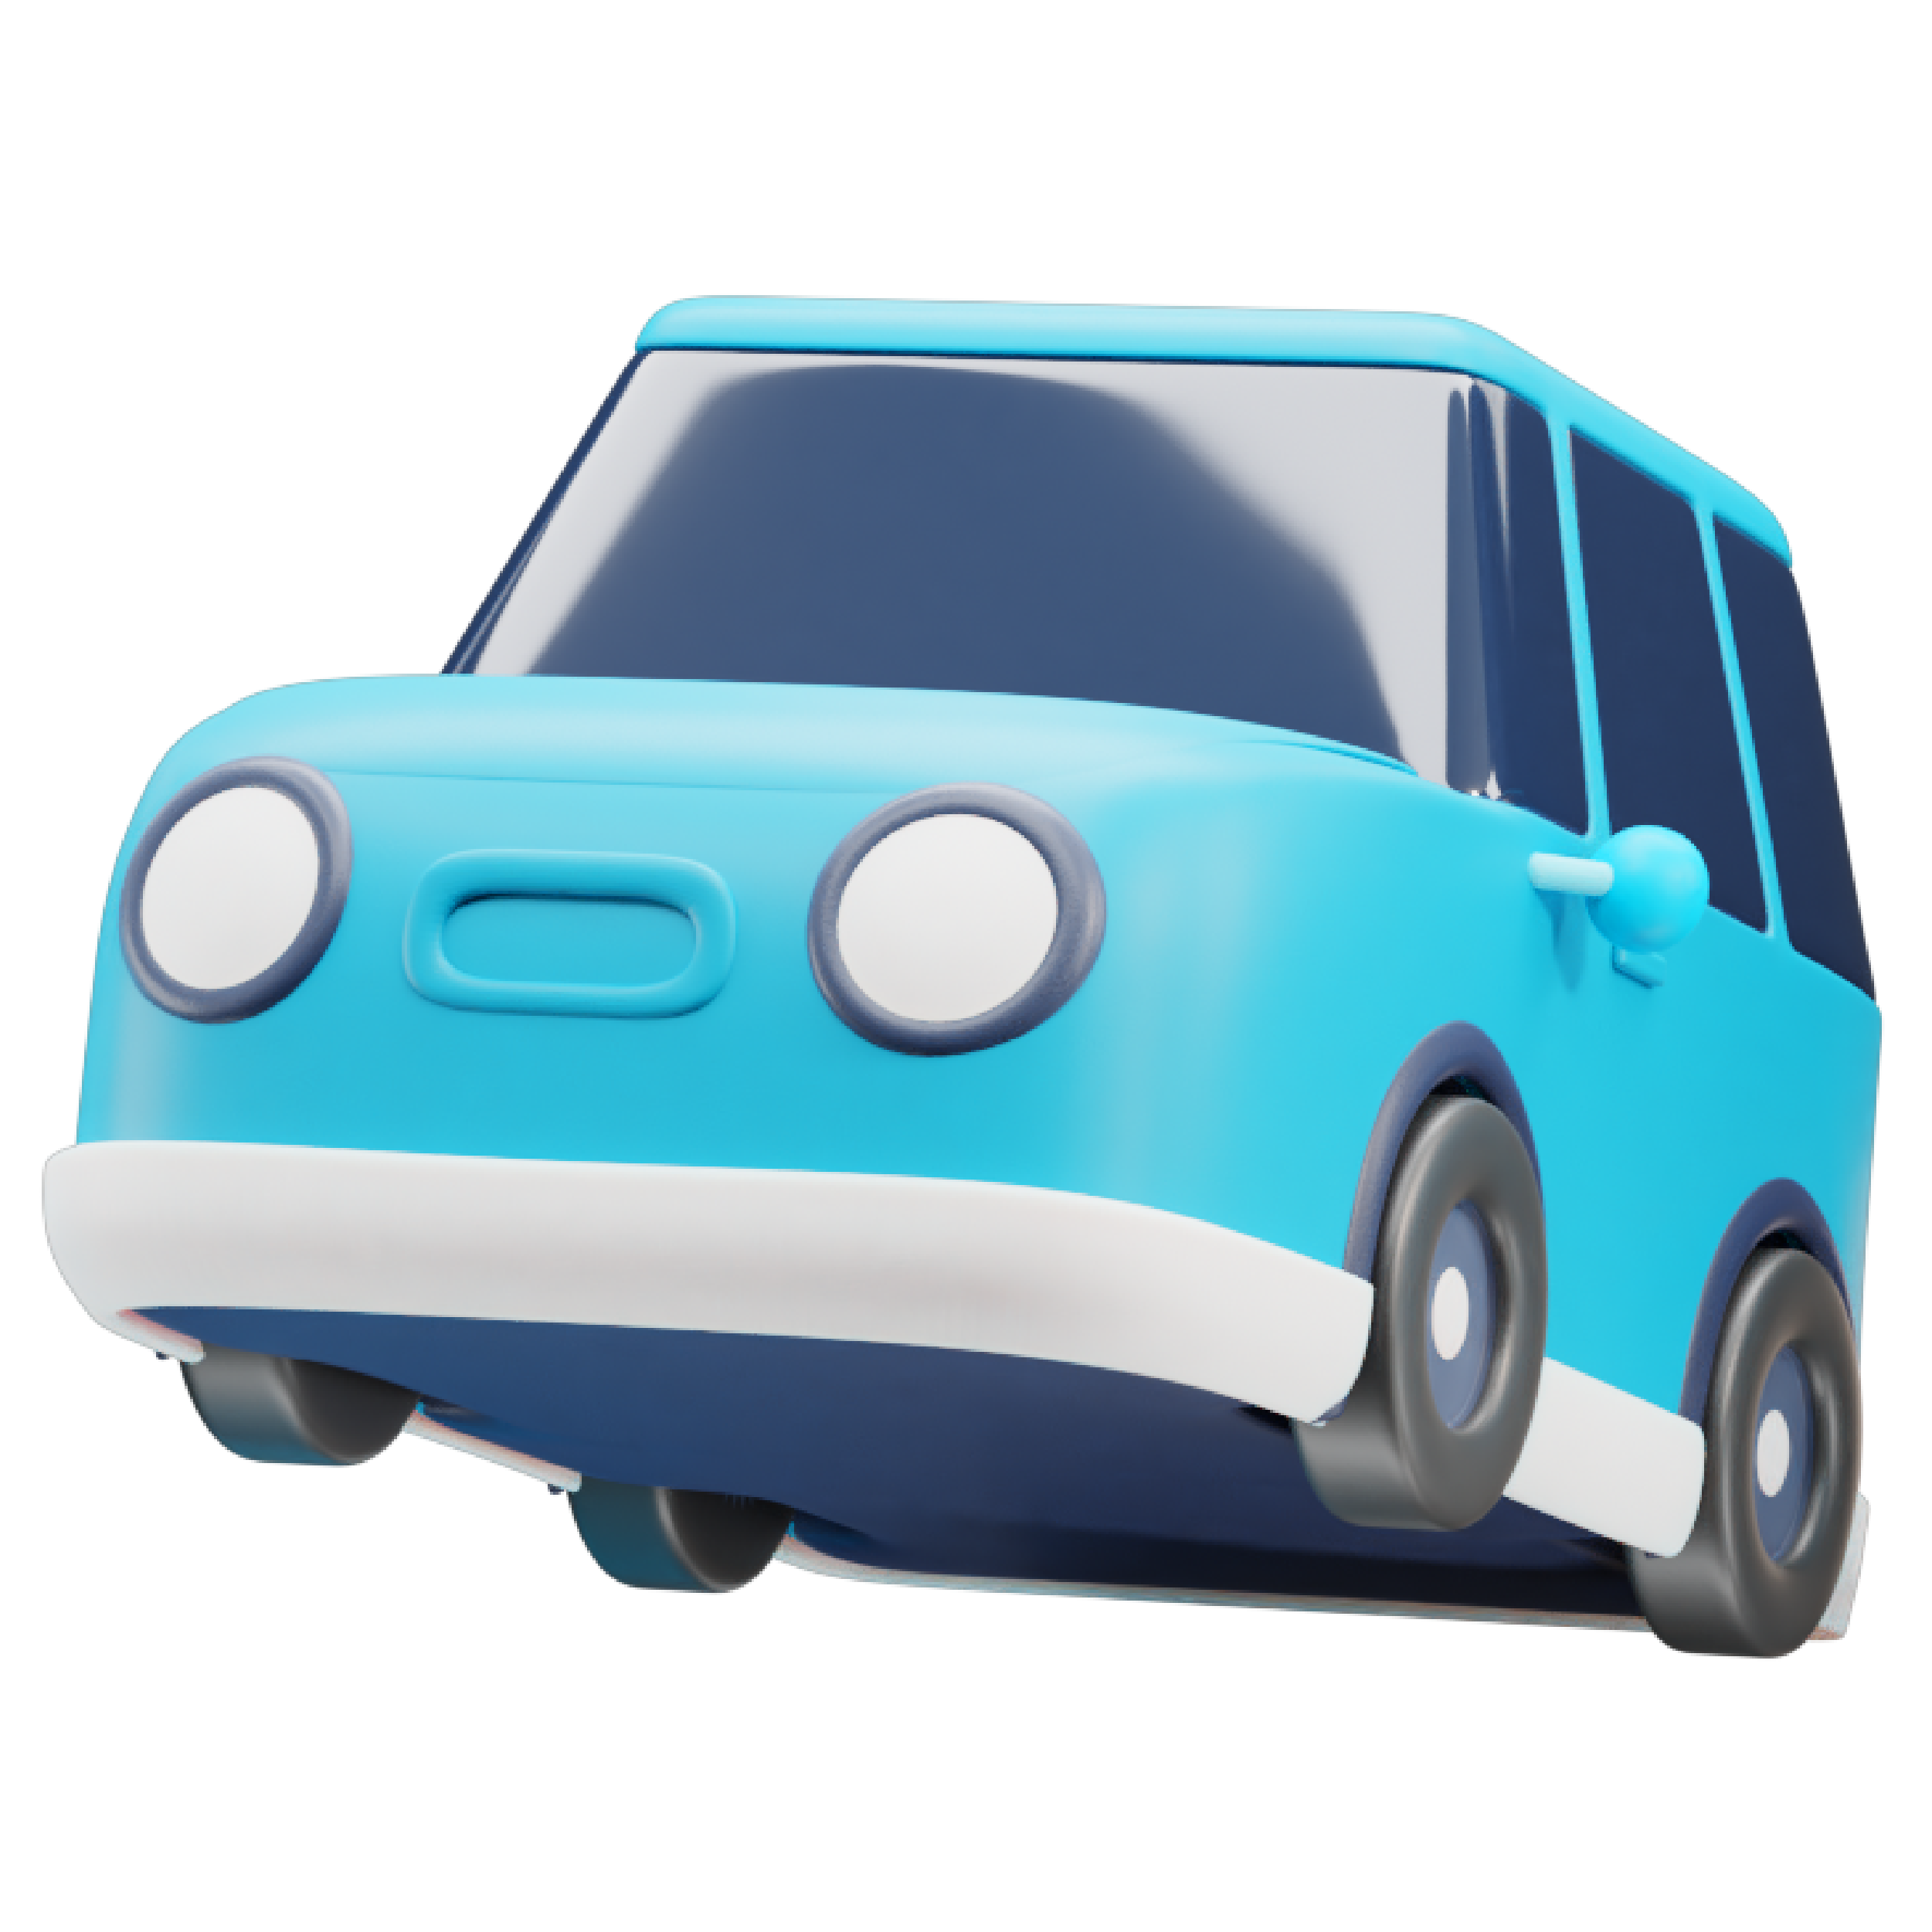 Illustratie van een blauwe auto